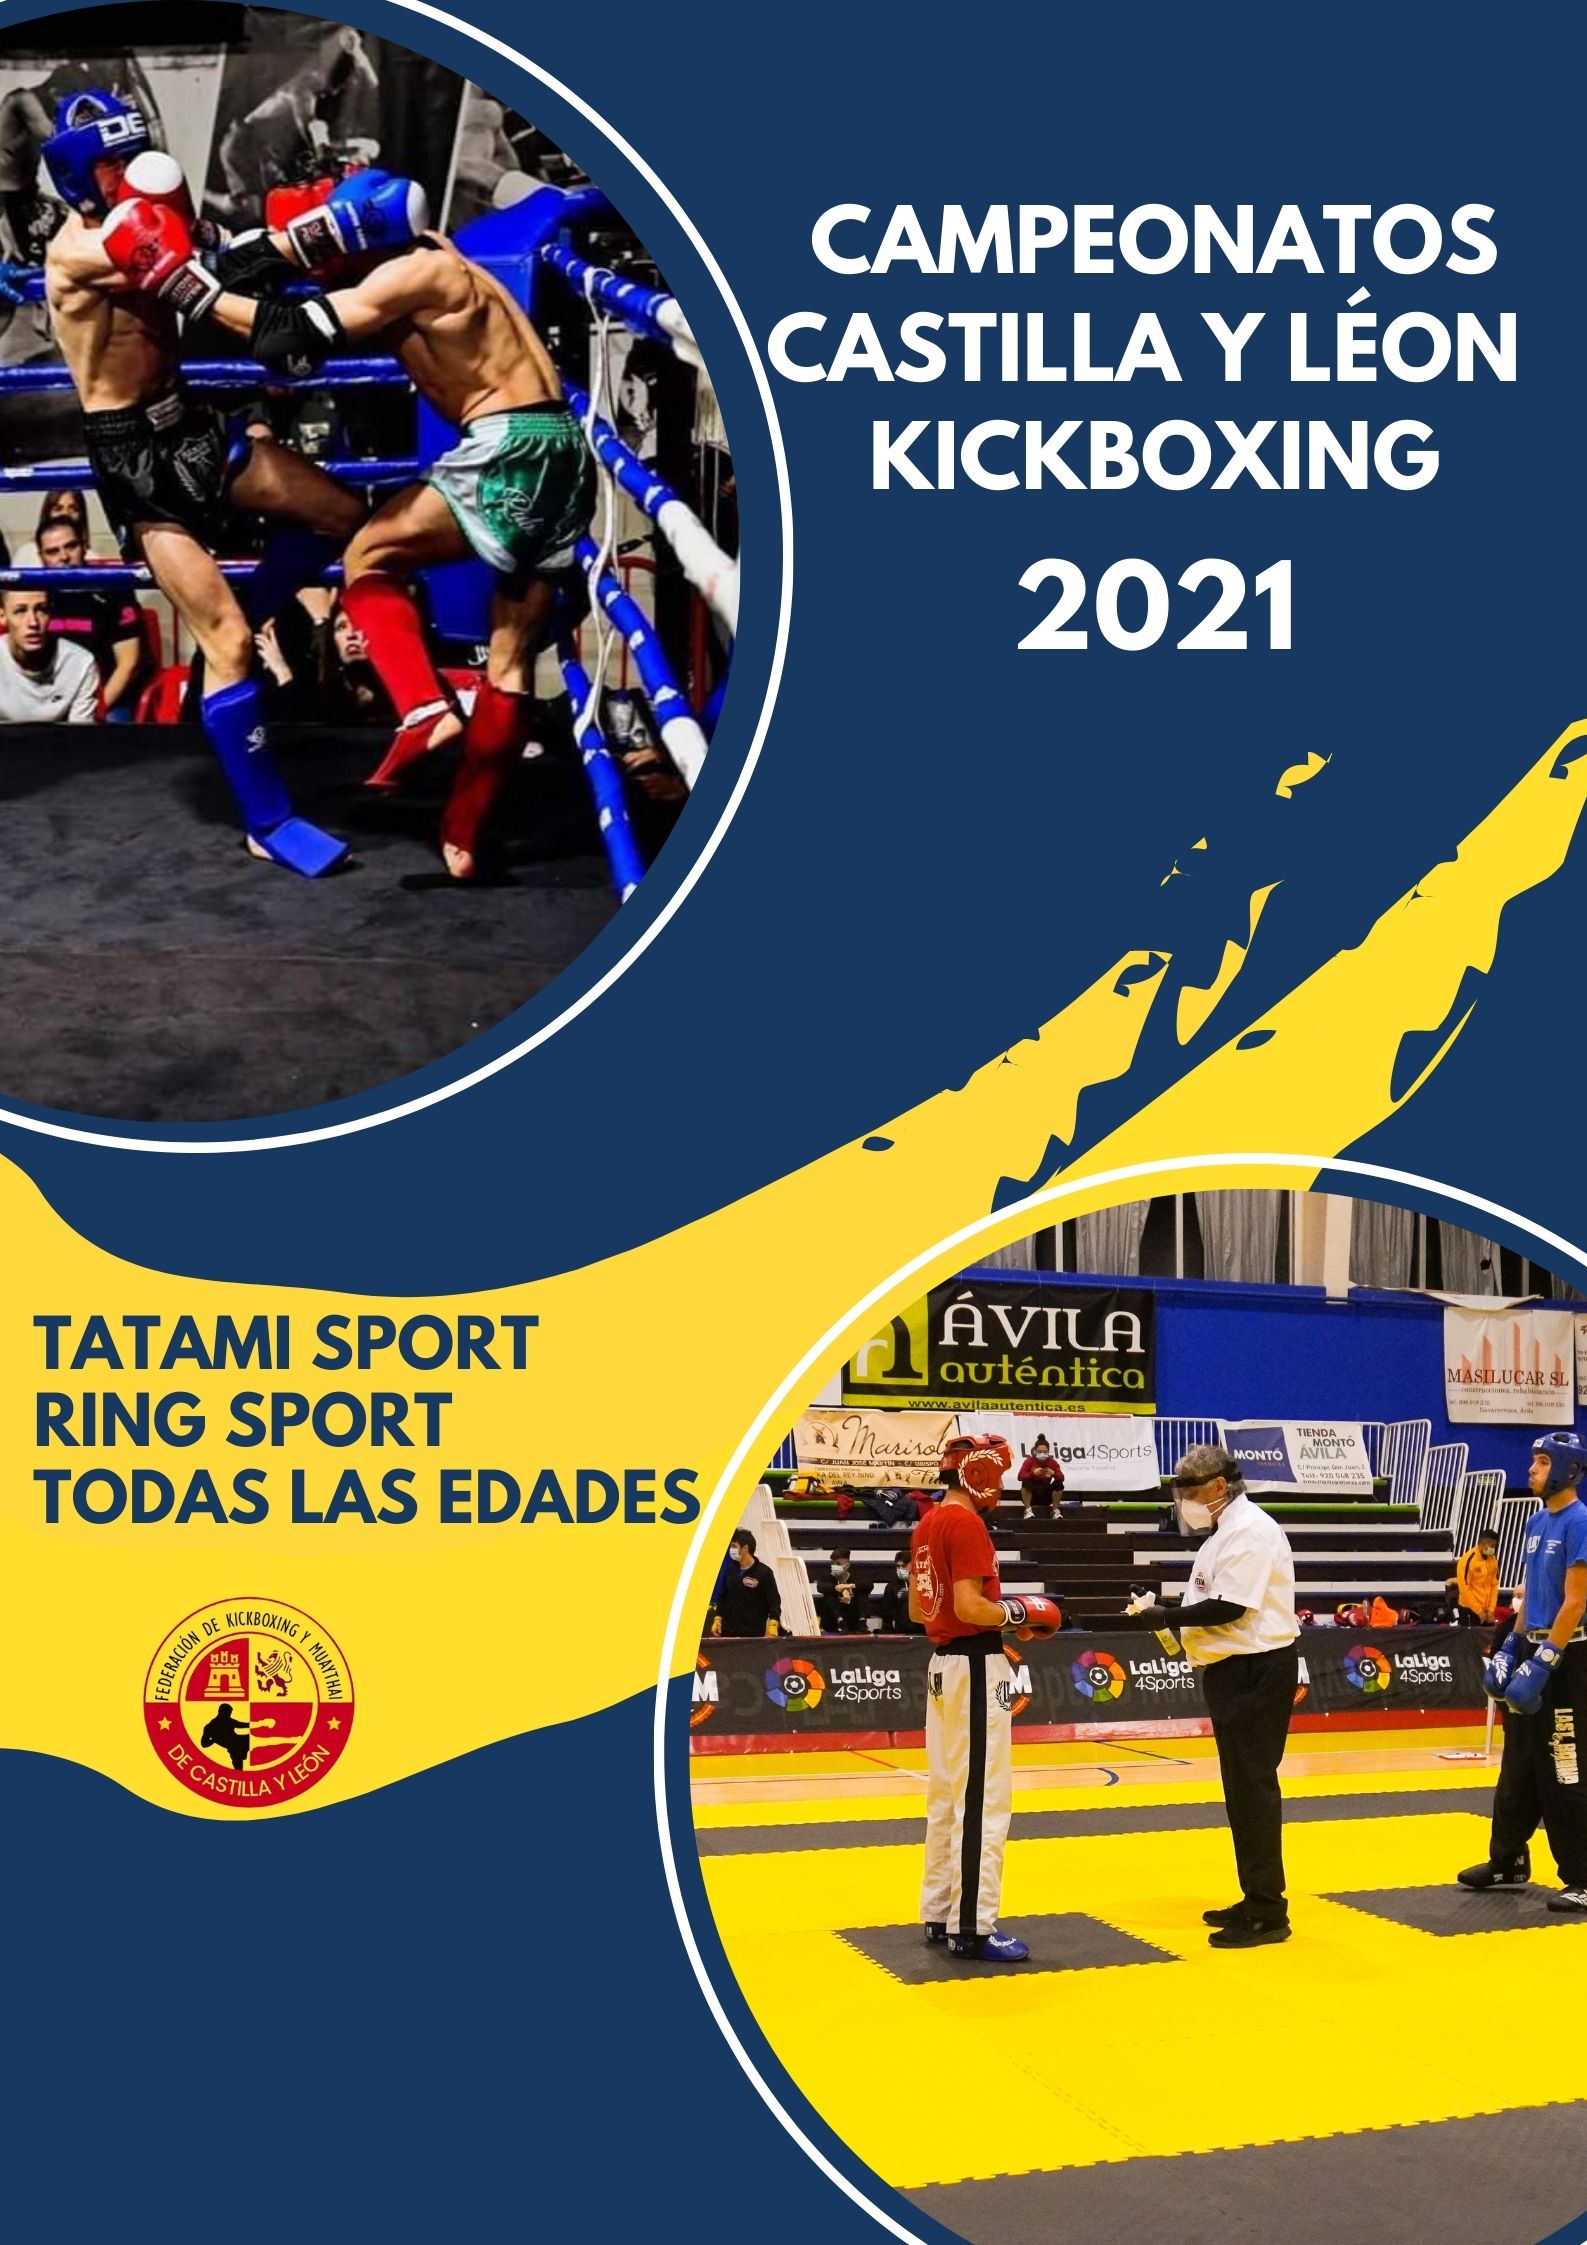 Campeonatos de Kickboxing de Castilla y León 2021